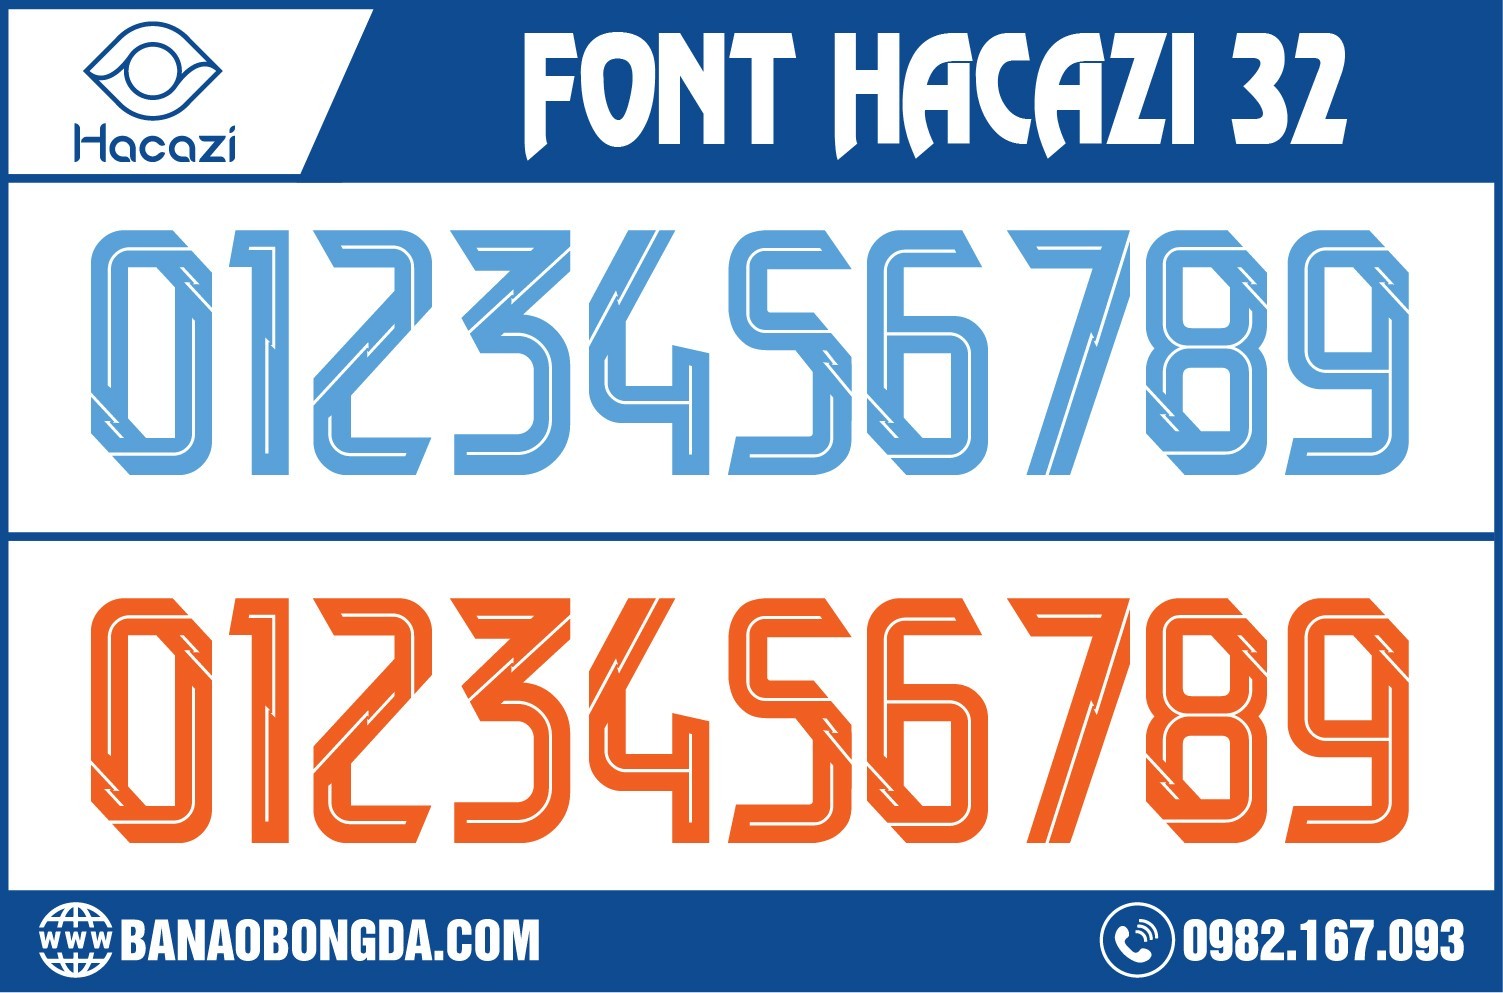 Sẽ là một mẫu font số của Shop Hacazi Sport mang tên bộ font số áo bóng đá 32 màu xanh - cam. Bởi font số này sở hữu màu sắc vô cùng nổi bật trên thiết kế đơn giản. Đây chính là sự giao thoa giữa hai gam màu nổi bật và hiện đại vô cùng khéo léo. 